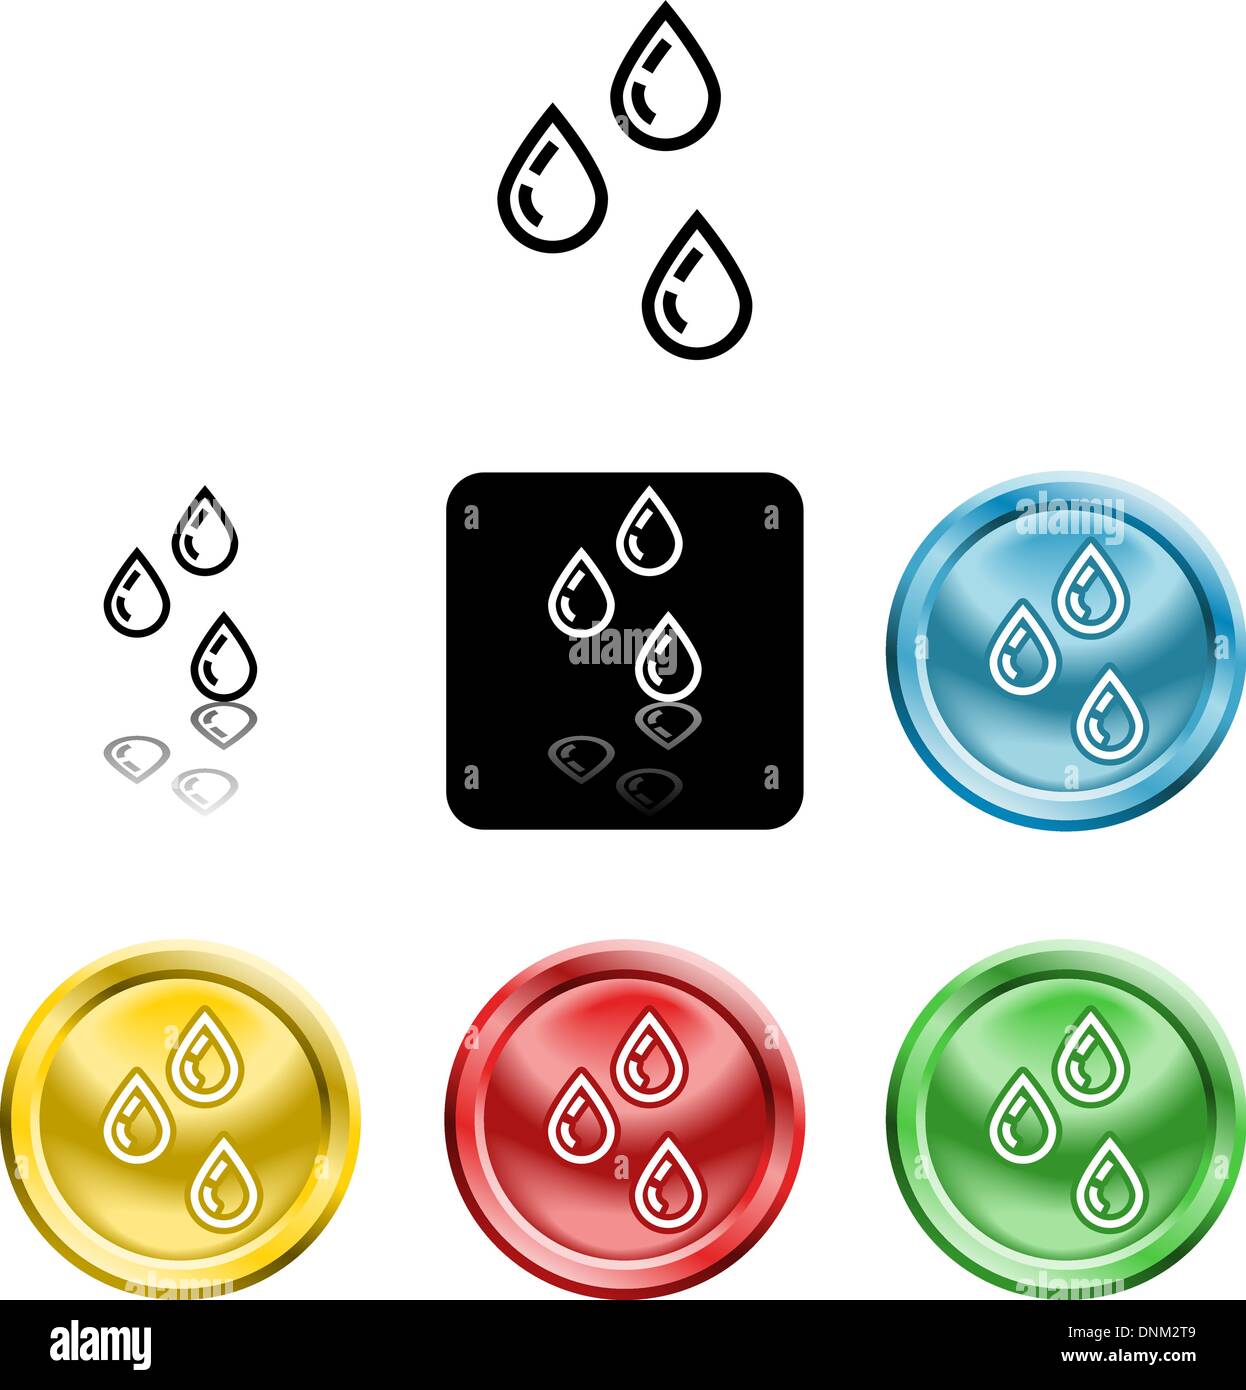 Plusieurs versions d'une icône symbole d'une des gouttes d'eau stylisée Illustration de Vecteur